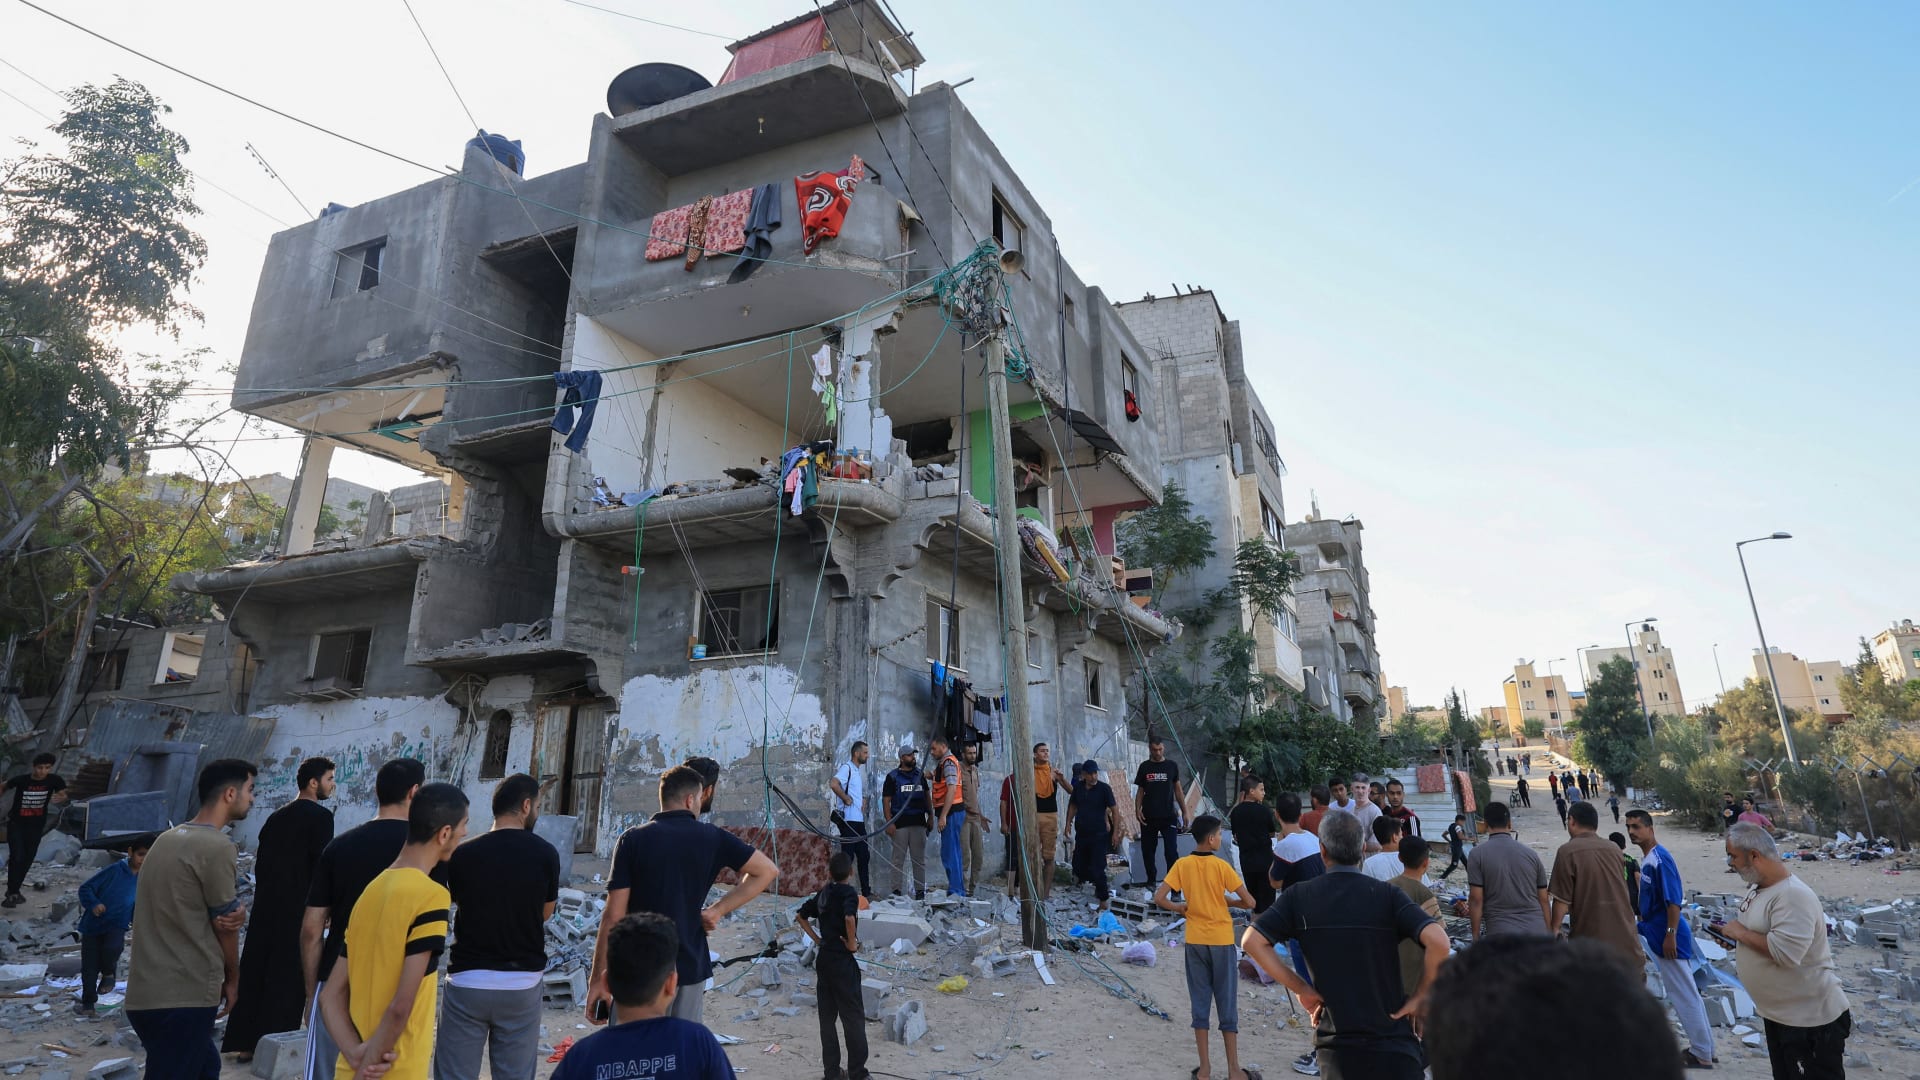 إسرائيل تكثف هجماتها.. قتلى ودمار في غزة وتحذيرات من اتساع الصراع